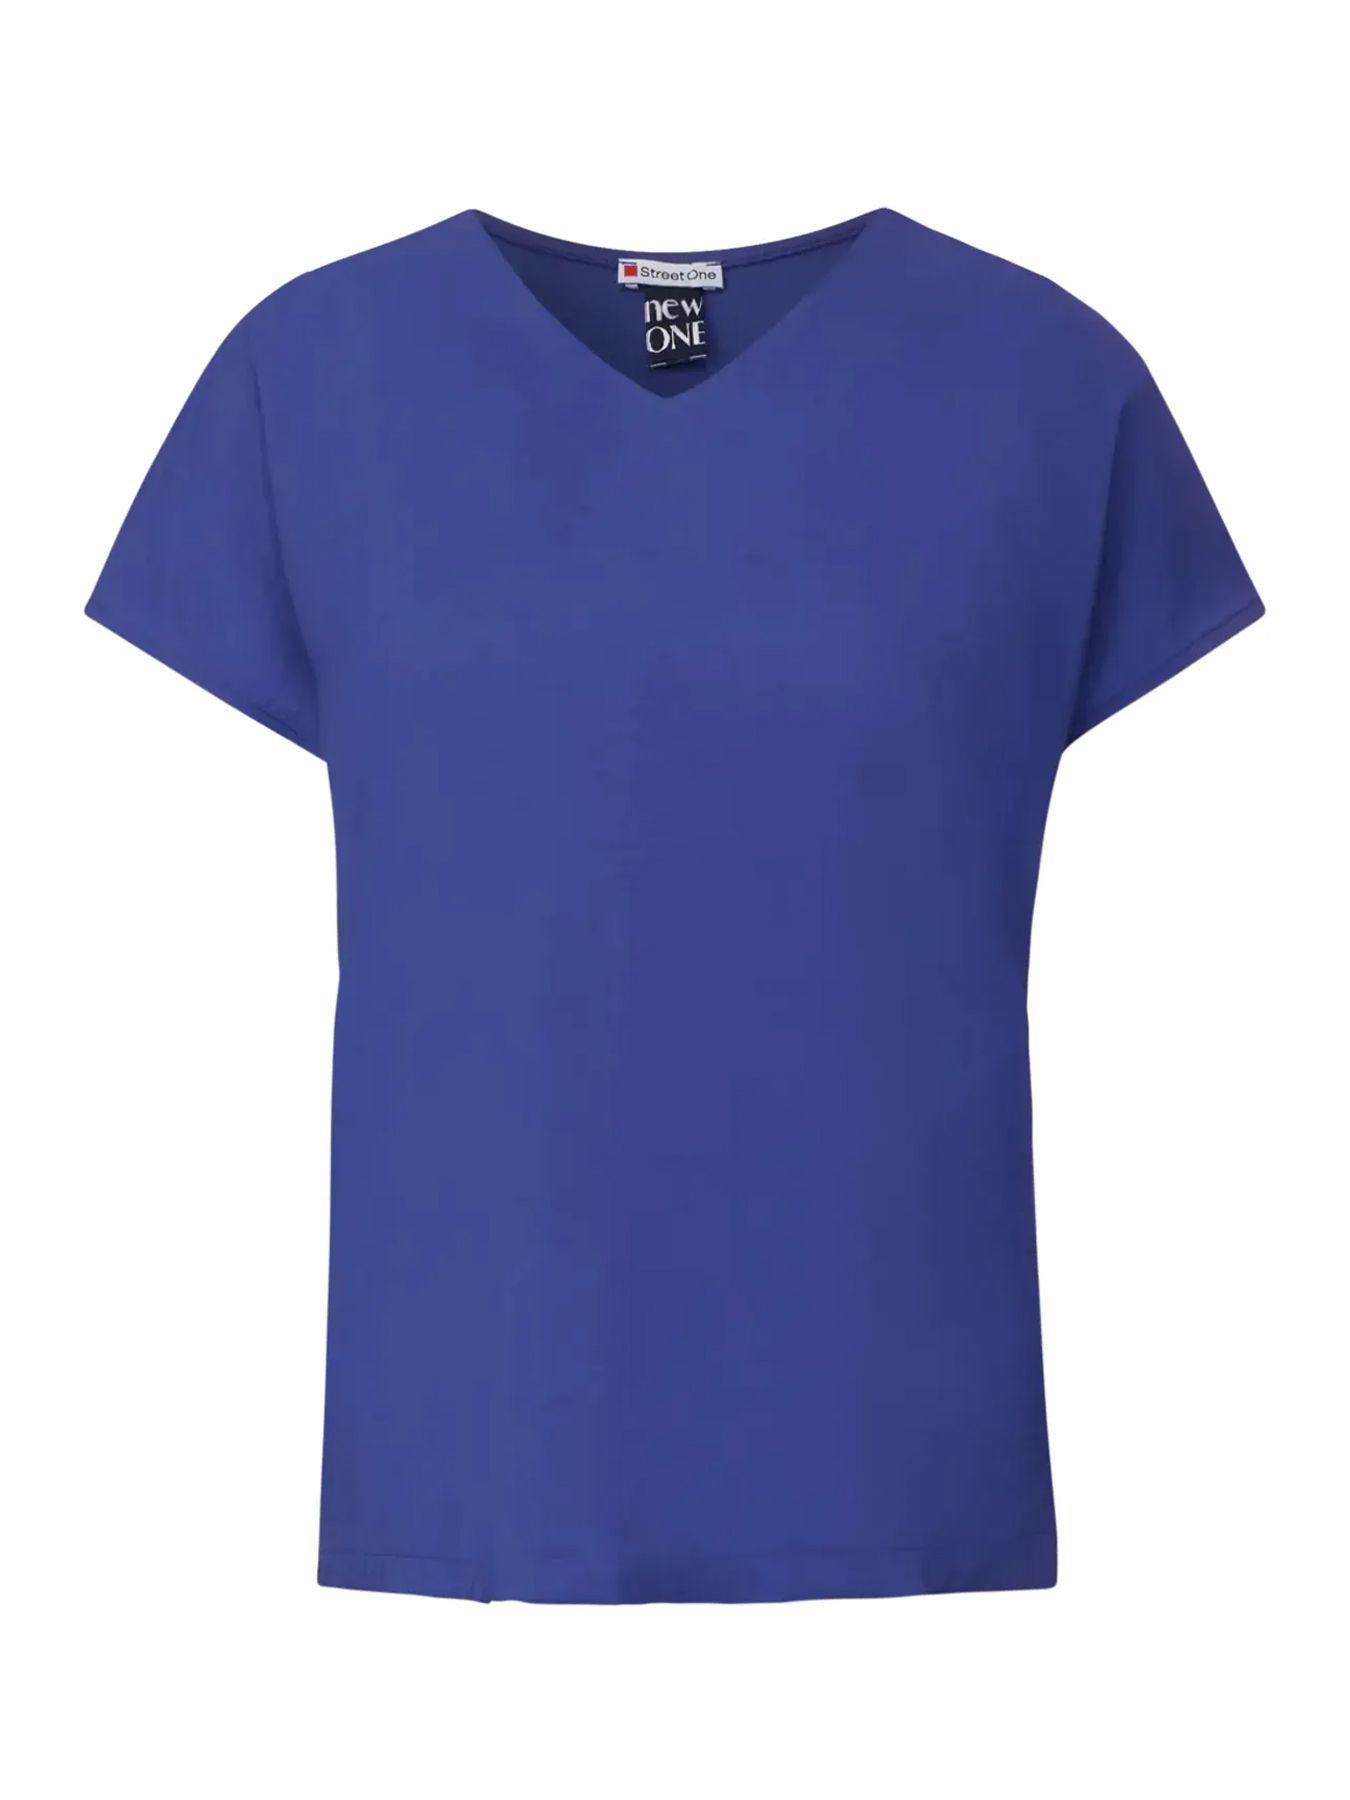 Street-One A321152 v-neck mat-mix shirt intense royal blue 2900146557063